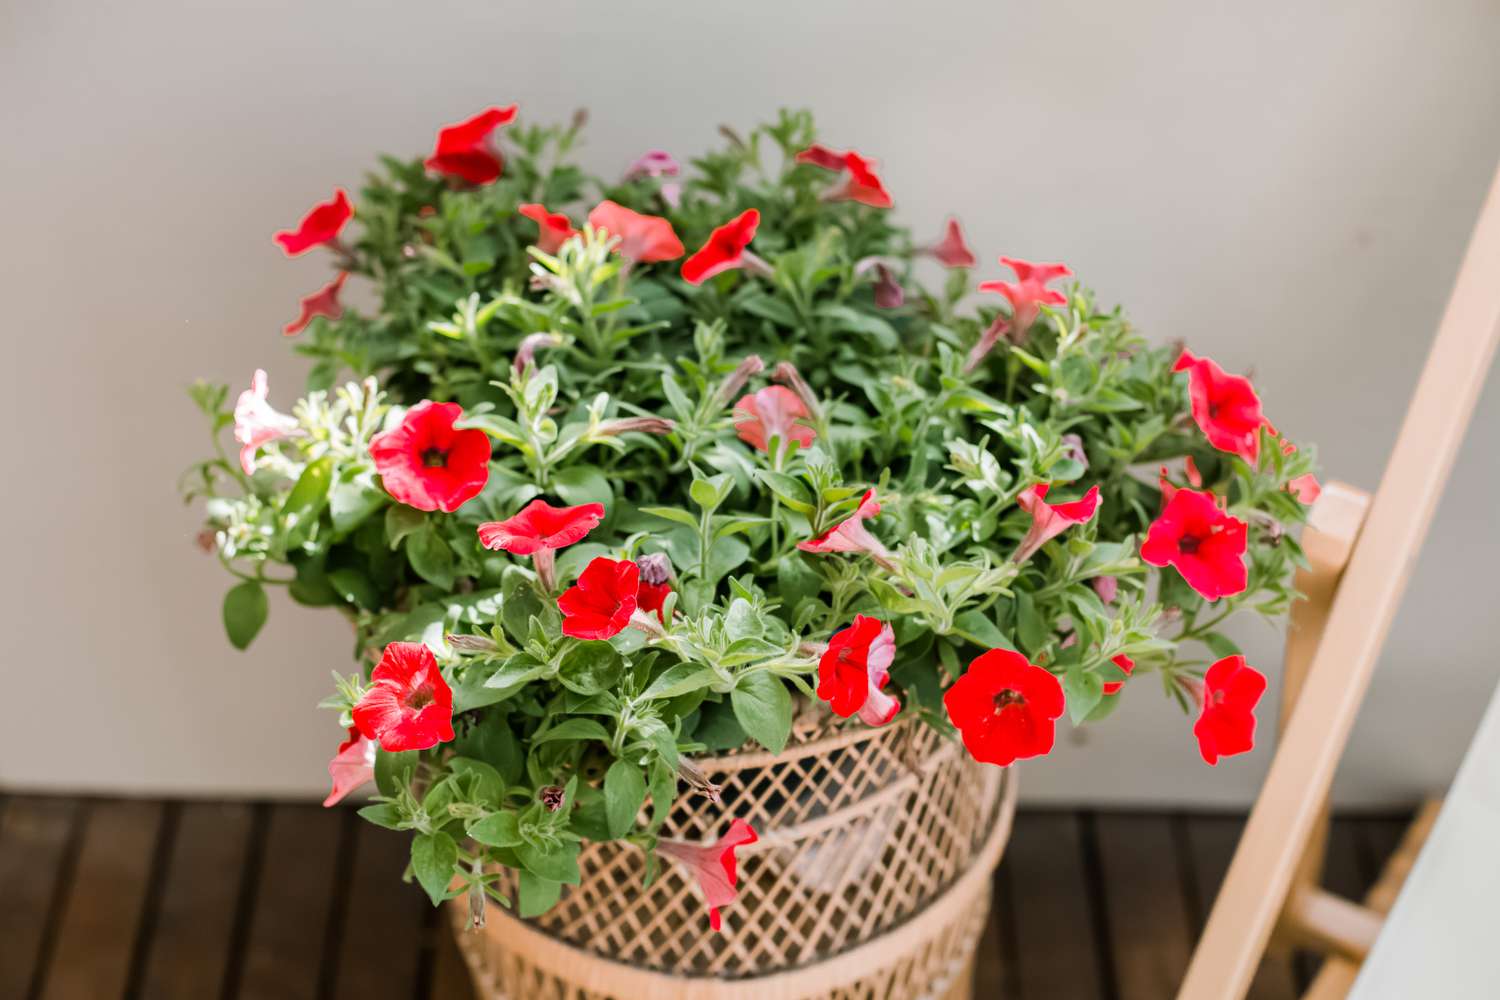 petunias growing in a basket